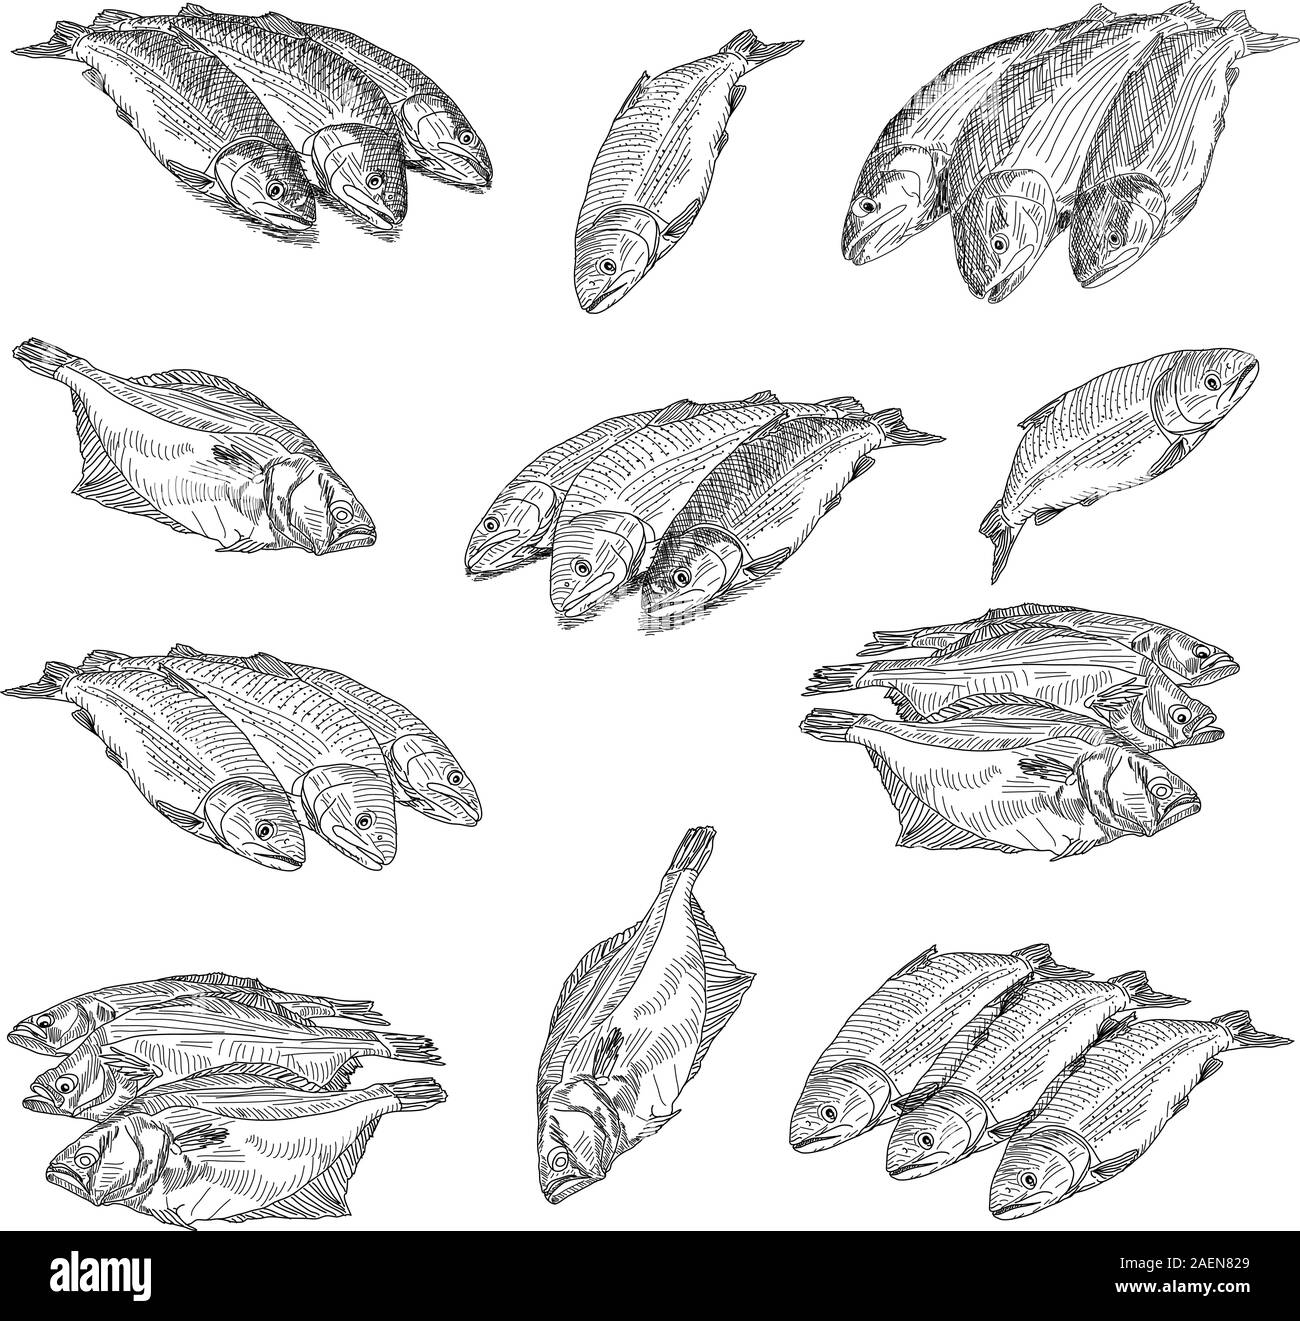 Mettre des fruits de mer se situent à proximité de poissons sur un fond blanc Illustration de Vecteur